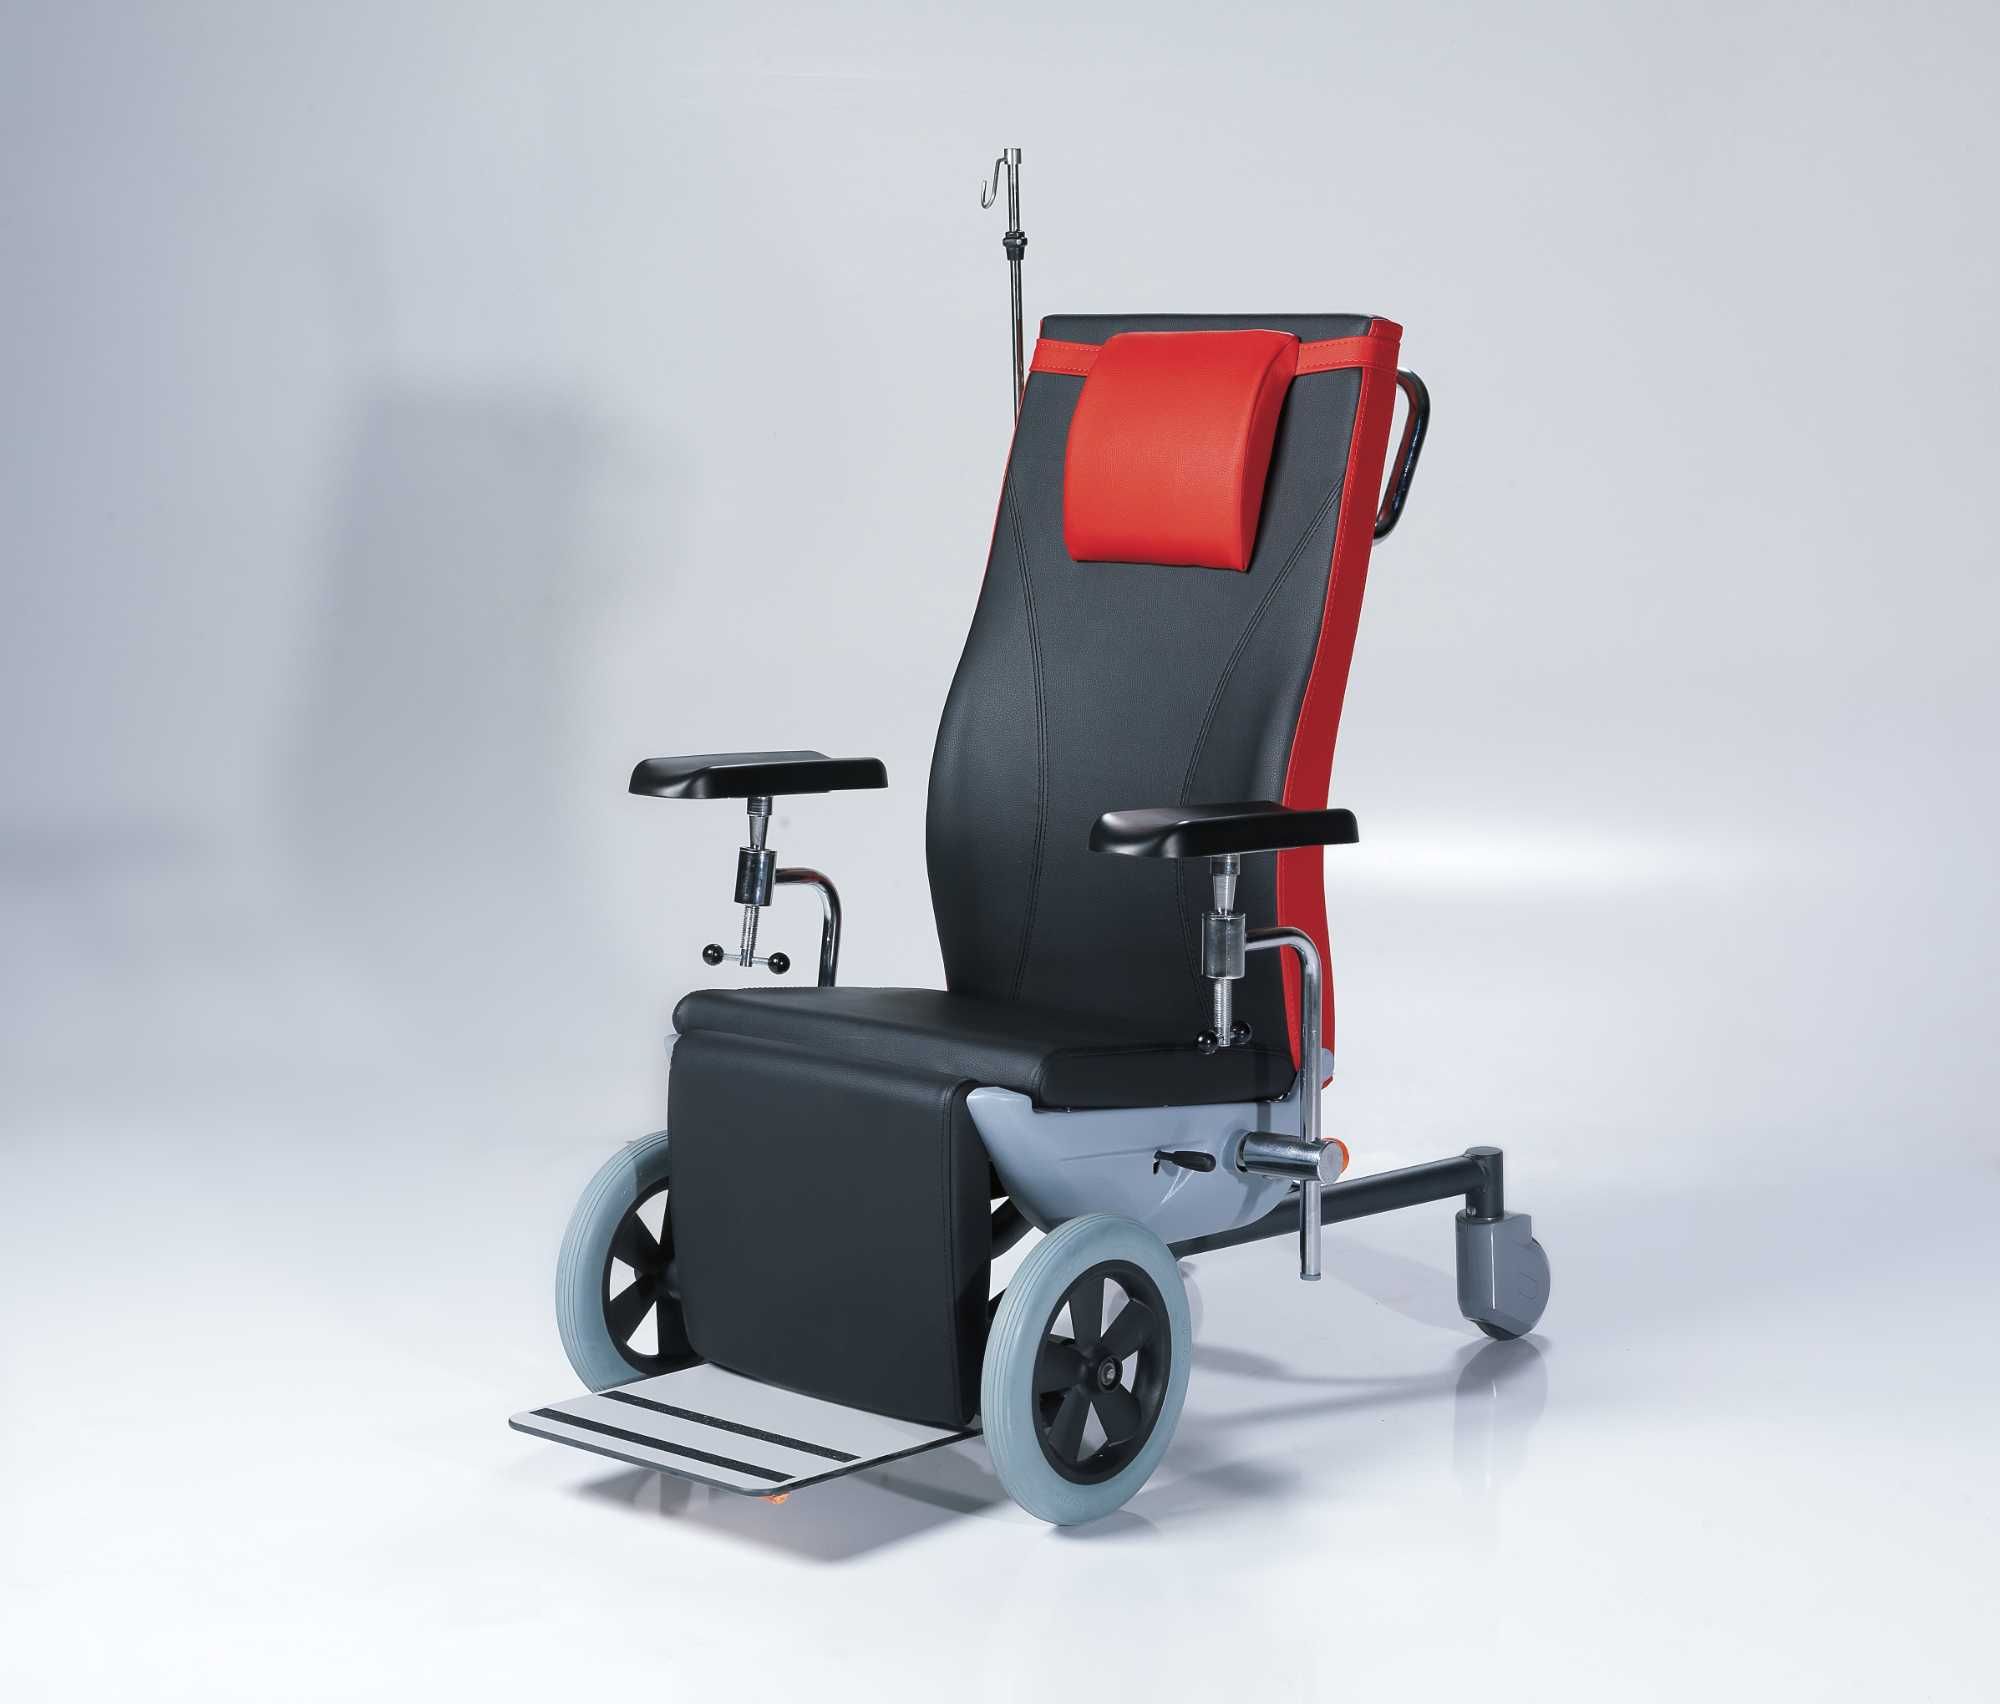 Кресло для забора крови, NTS - X7, Nitrocare - Турция